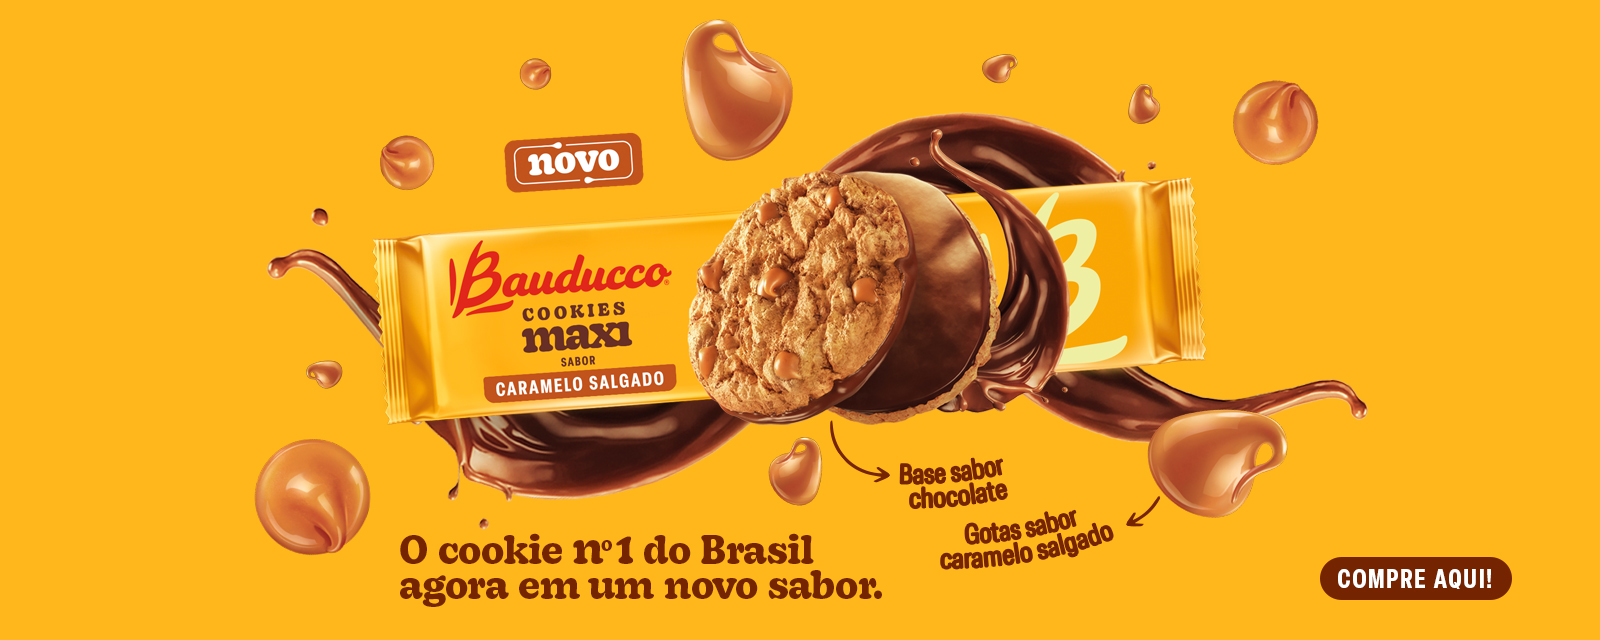 Barrinha Biscoito Recheadinho Chocolate Maxi Bauducco 25g